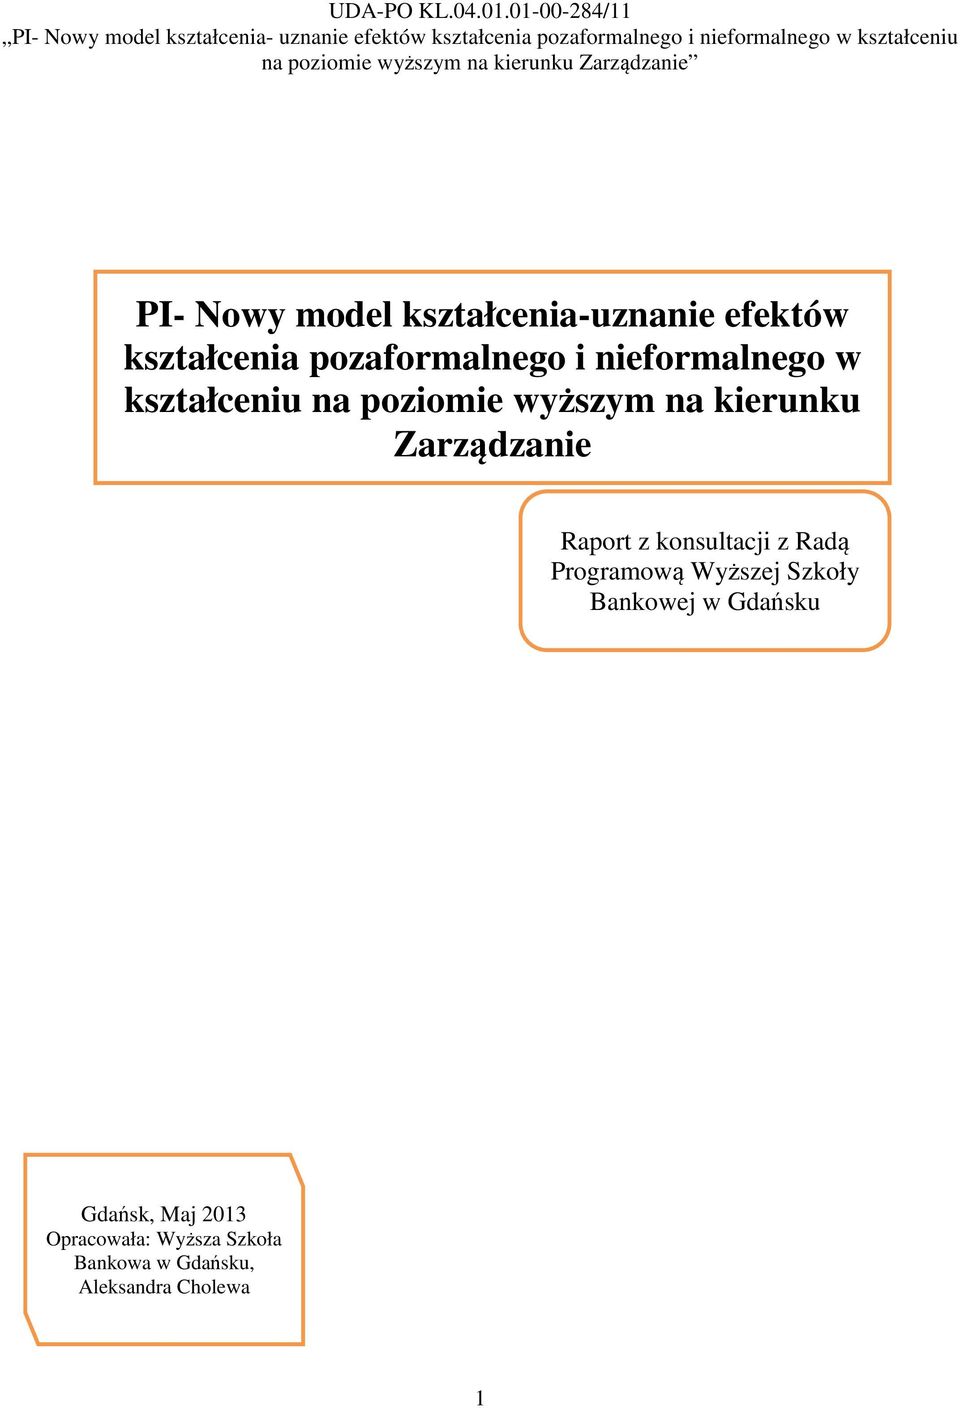 Raport z konsultacji z Radą Programową Wyższej Szkoły Bankowej w Gdańsku